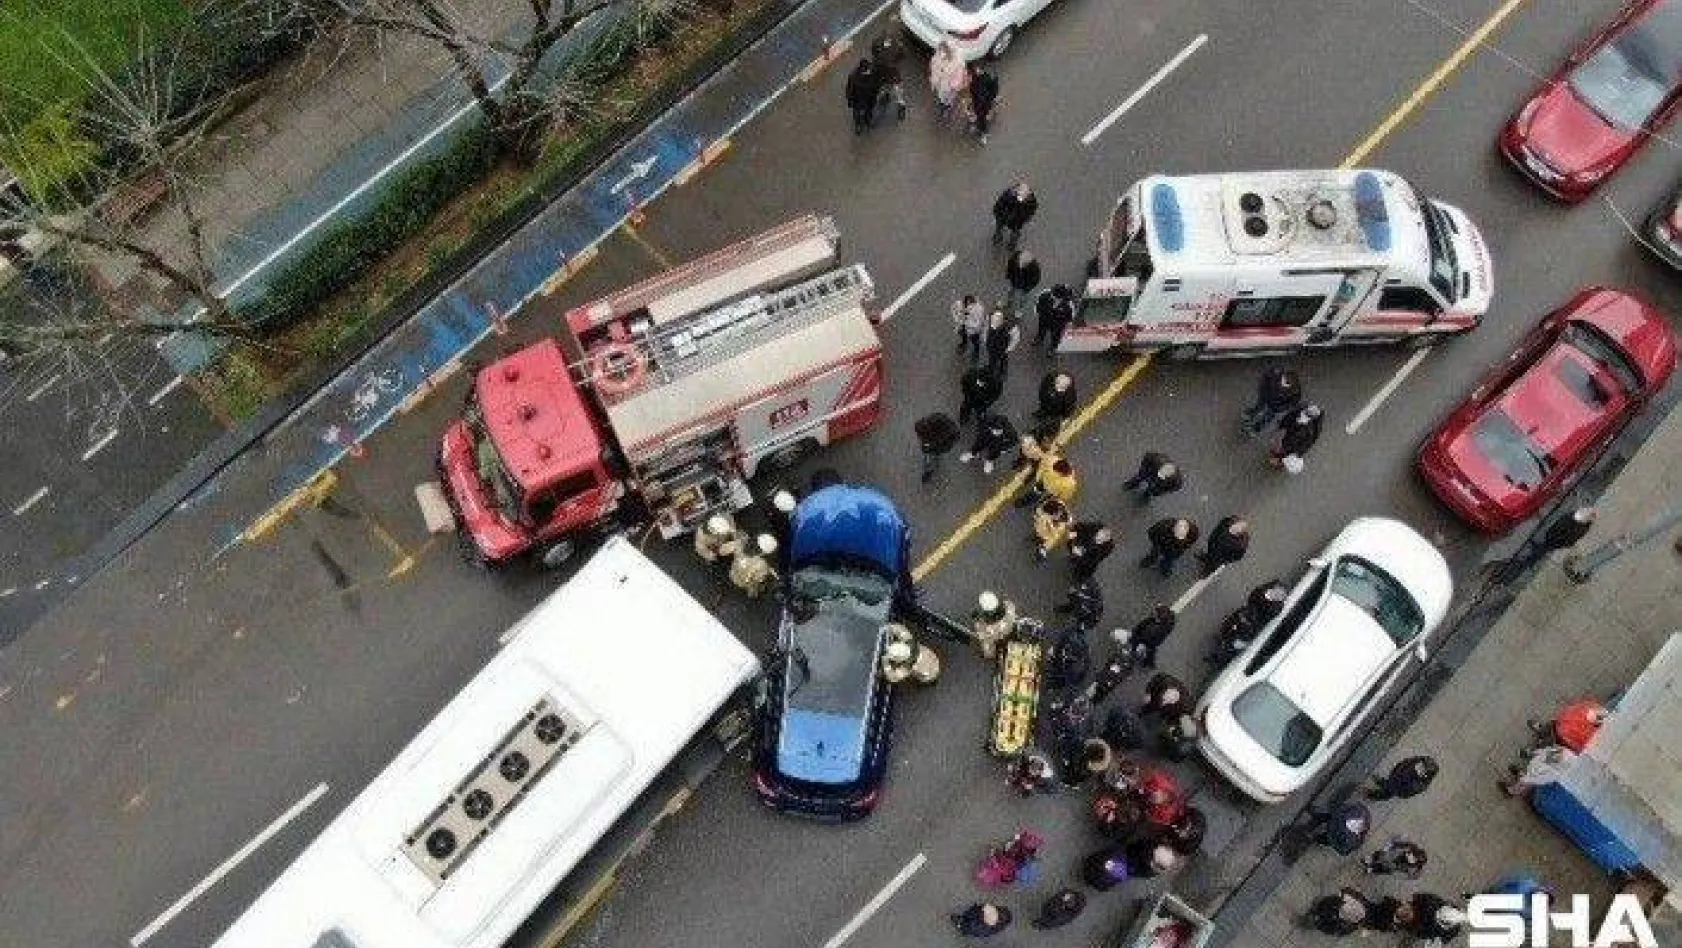 Kadıköy'de İETT otobüsü otomobile çarptı, sürücü kadın araçta sıkıştı